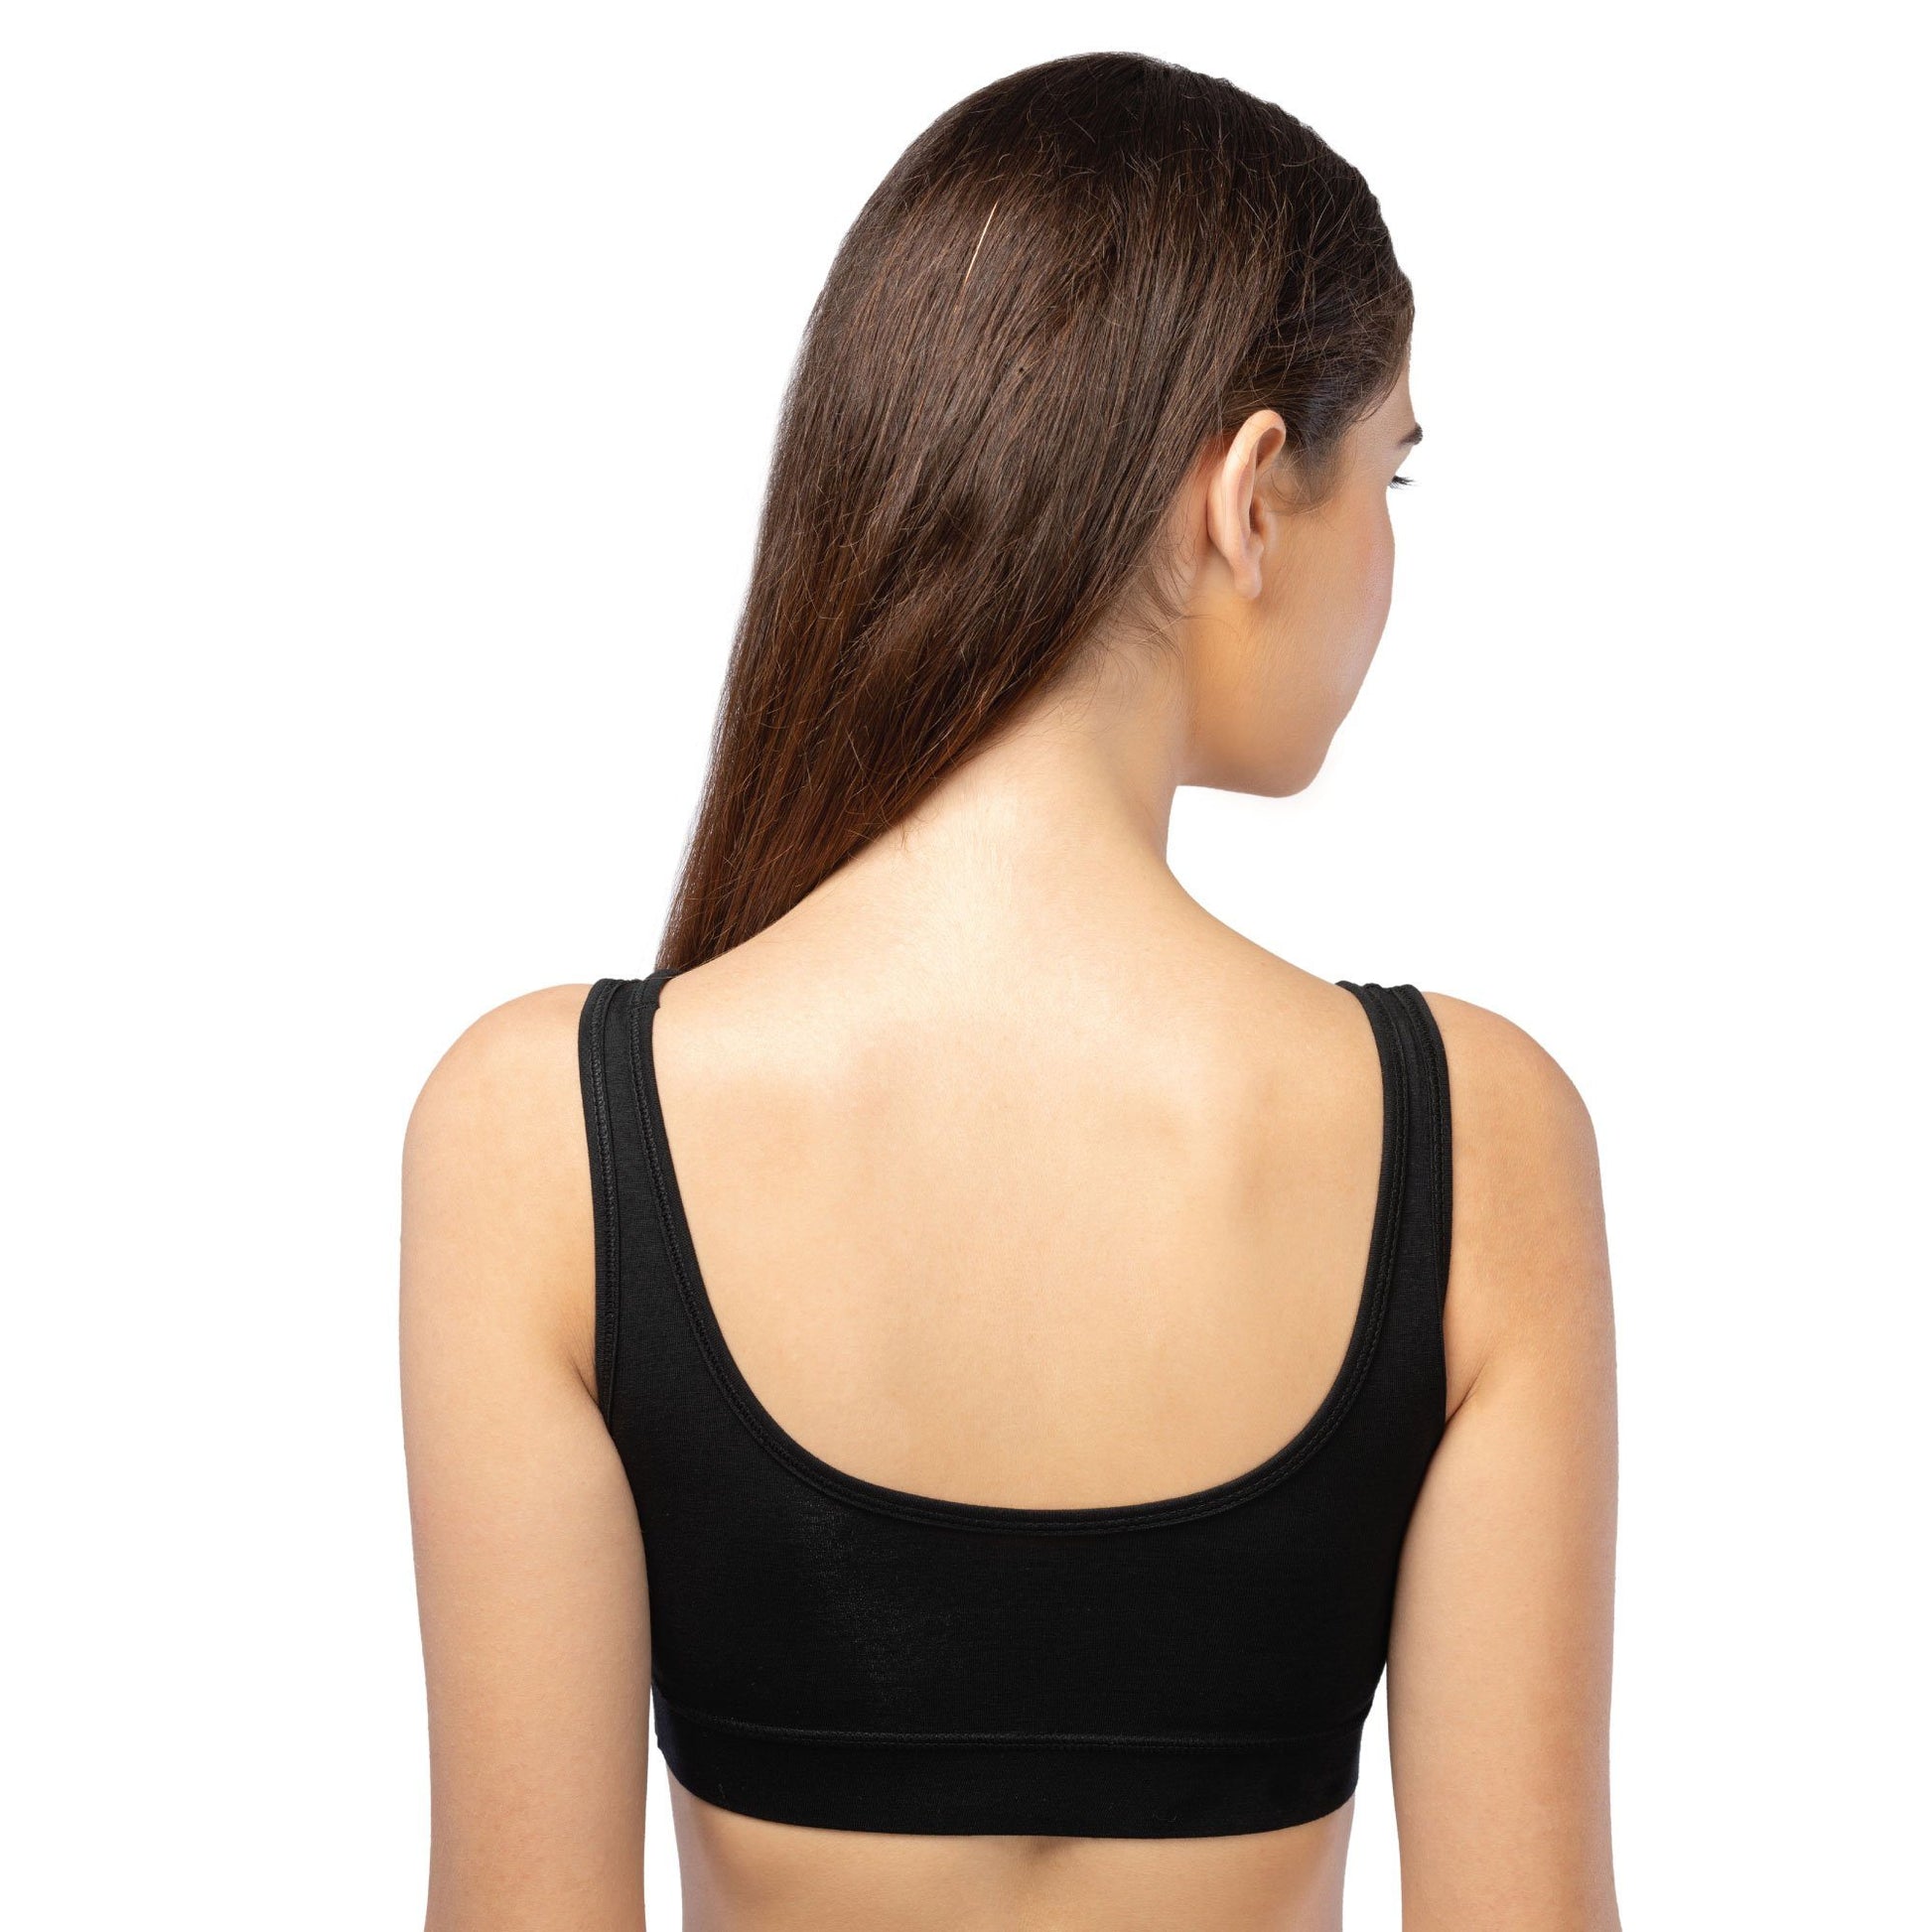 Comfort Bra | Sleep Bra | Night bra - comfortable every day slip on bra  made from natural bamboo fabric